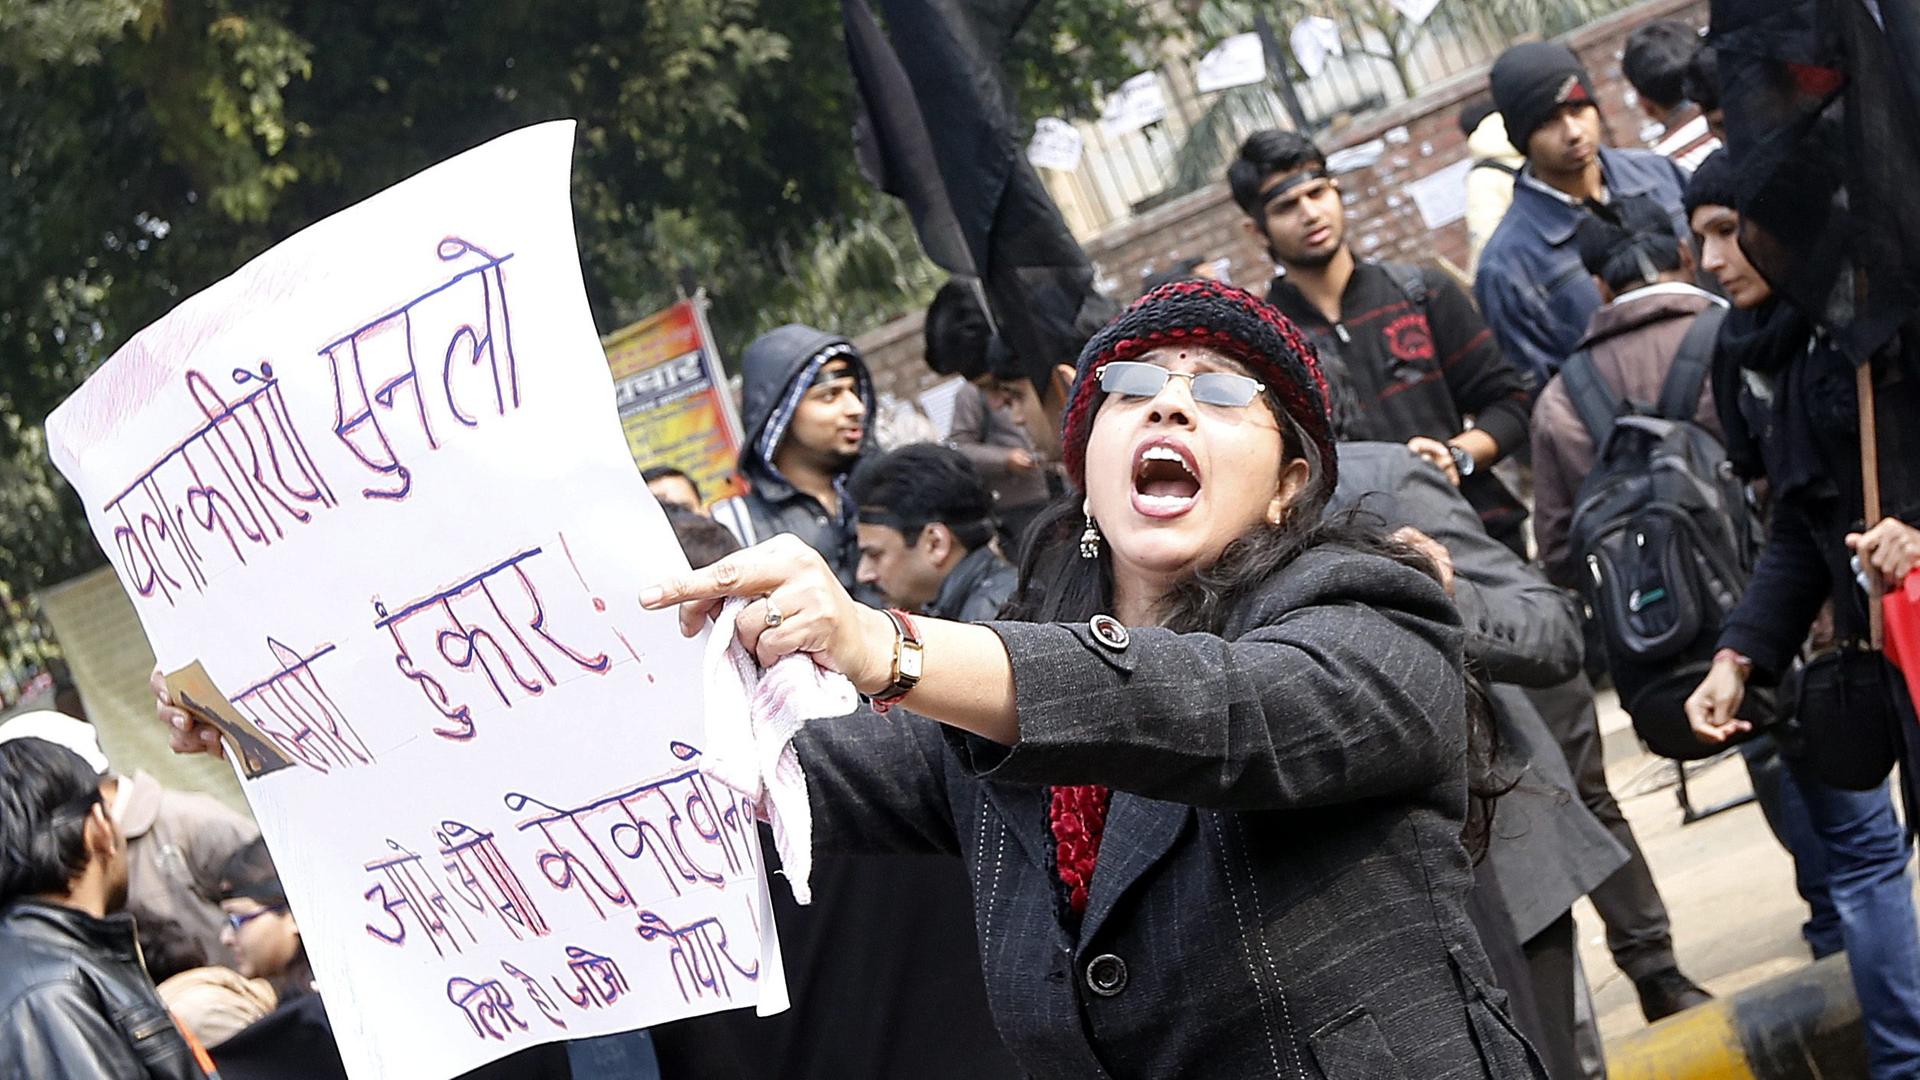 Menschen in Indien fordern eine gerechte Strafe für die Täter. (Bild: picture alliance / dpa / Harish Tyagi)